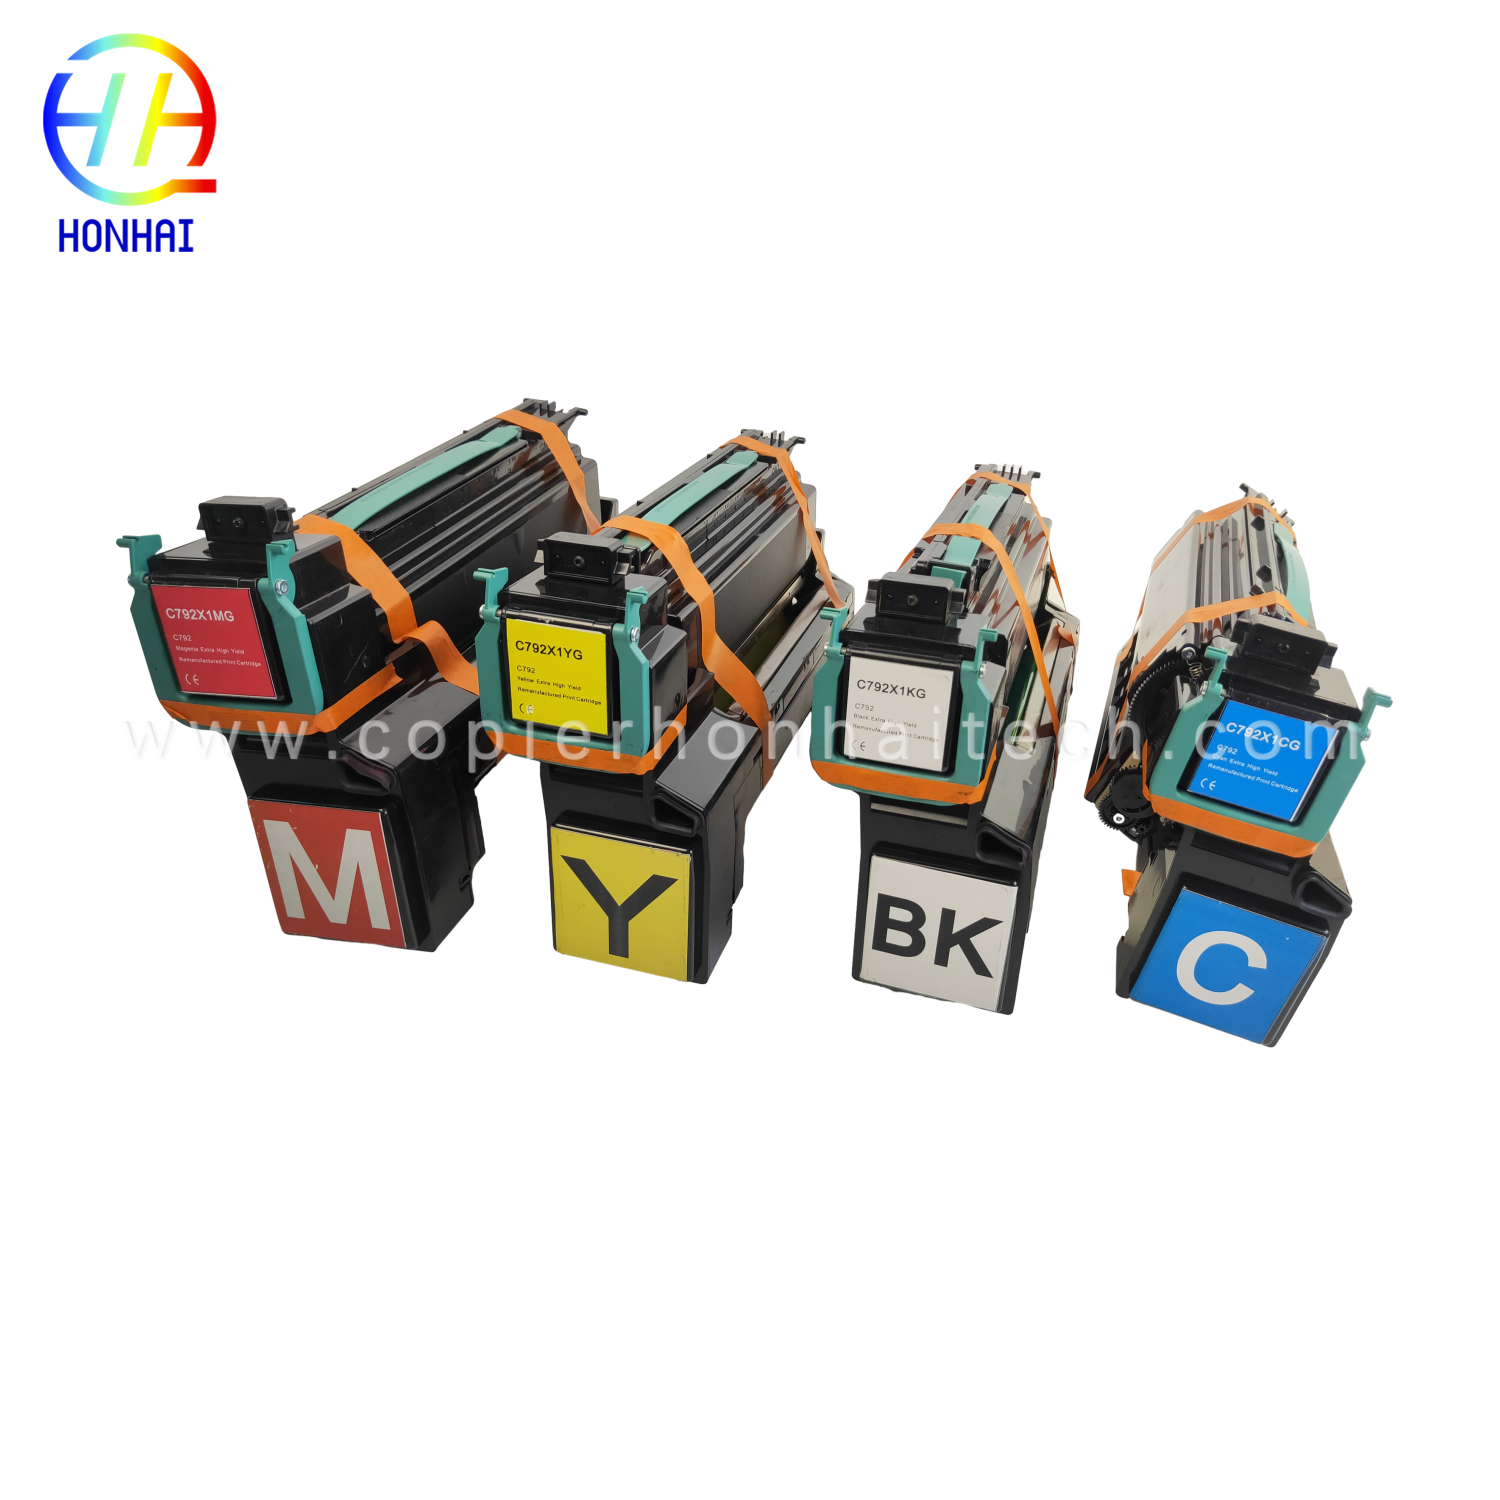 https://www.copierhonhaitech.com/toner-cartridge-set-for-lexmark-c792de-c792x1-product/